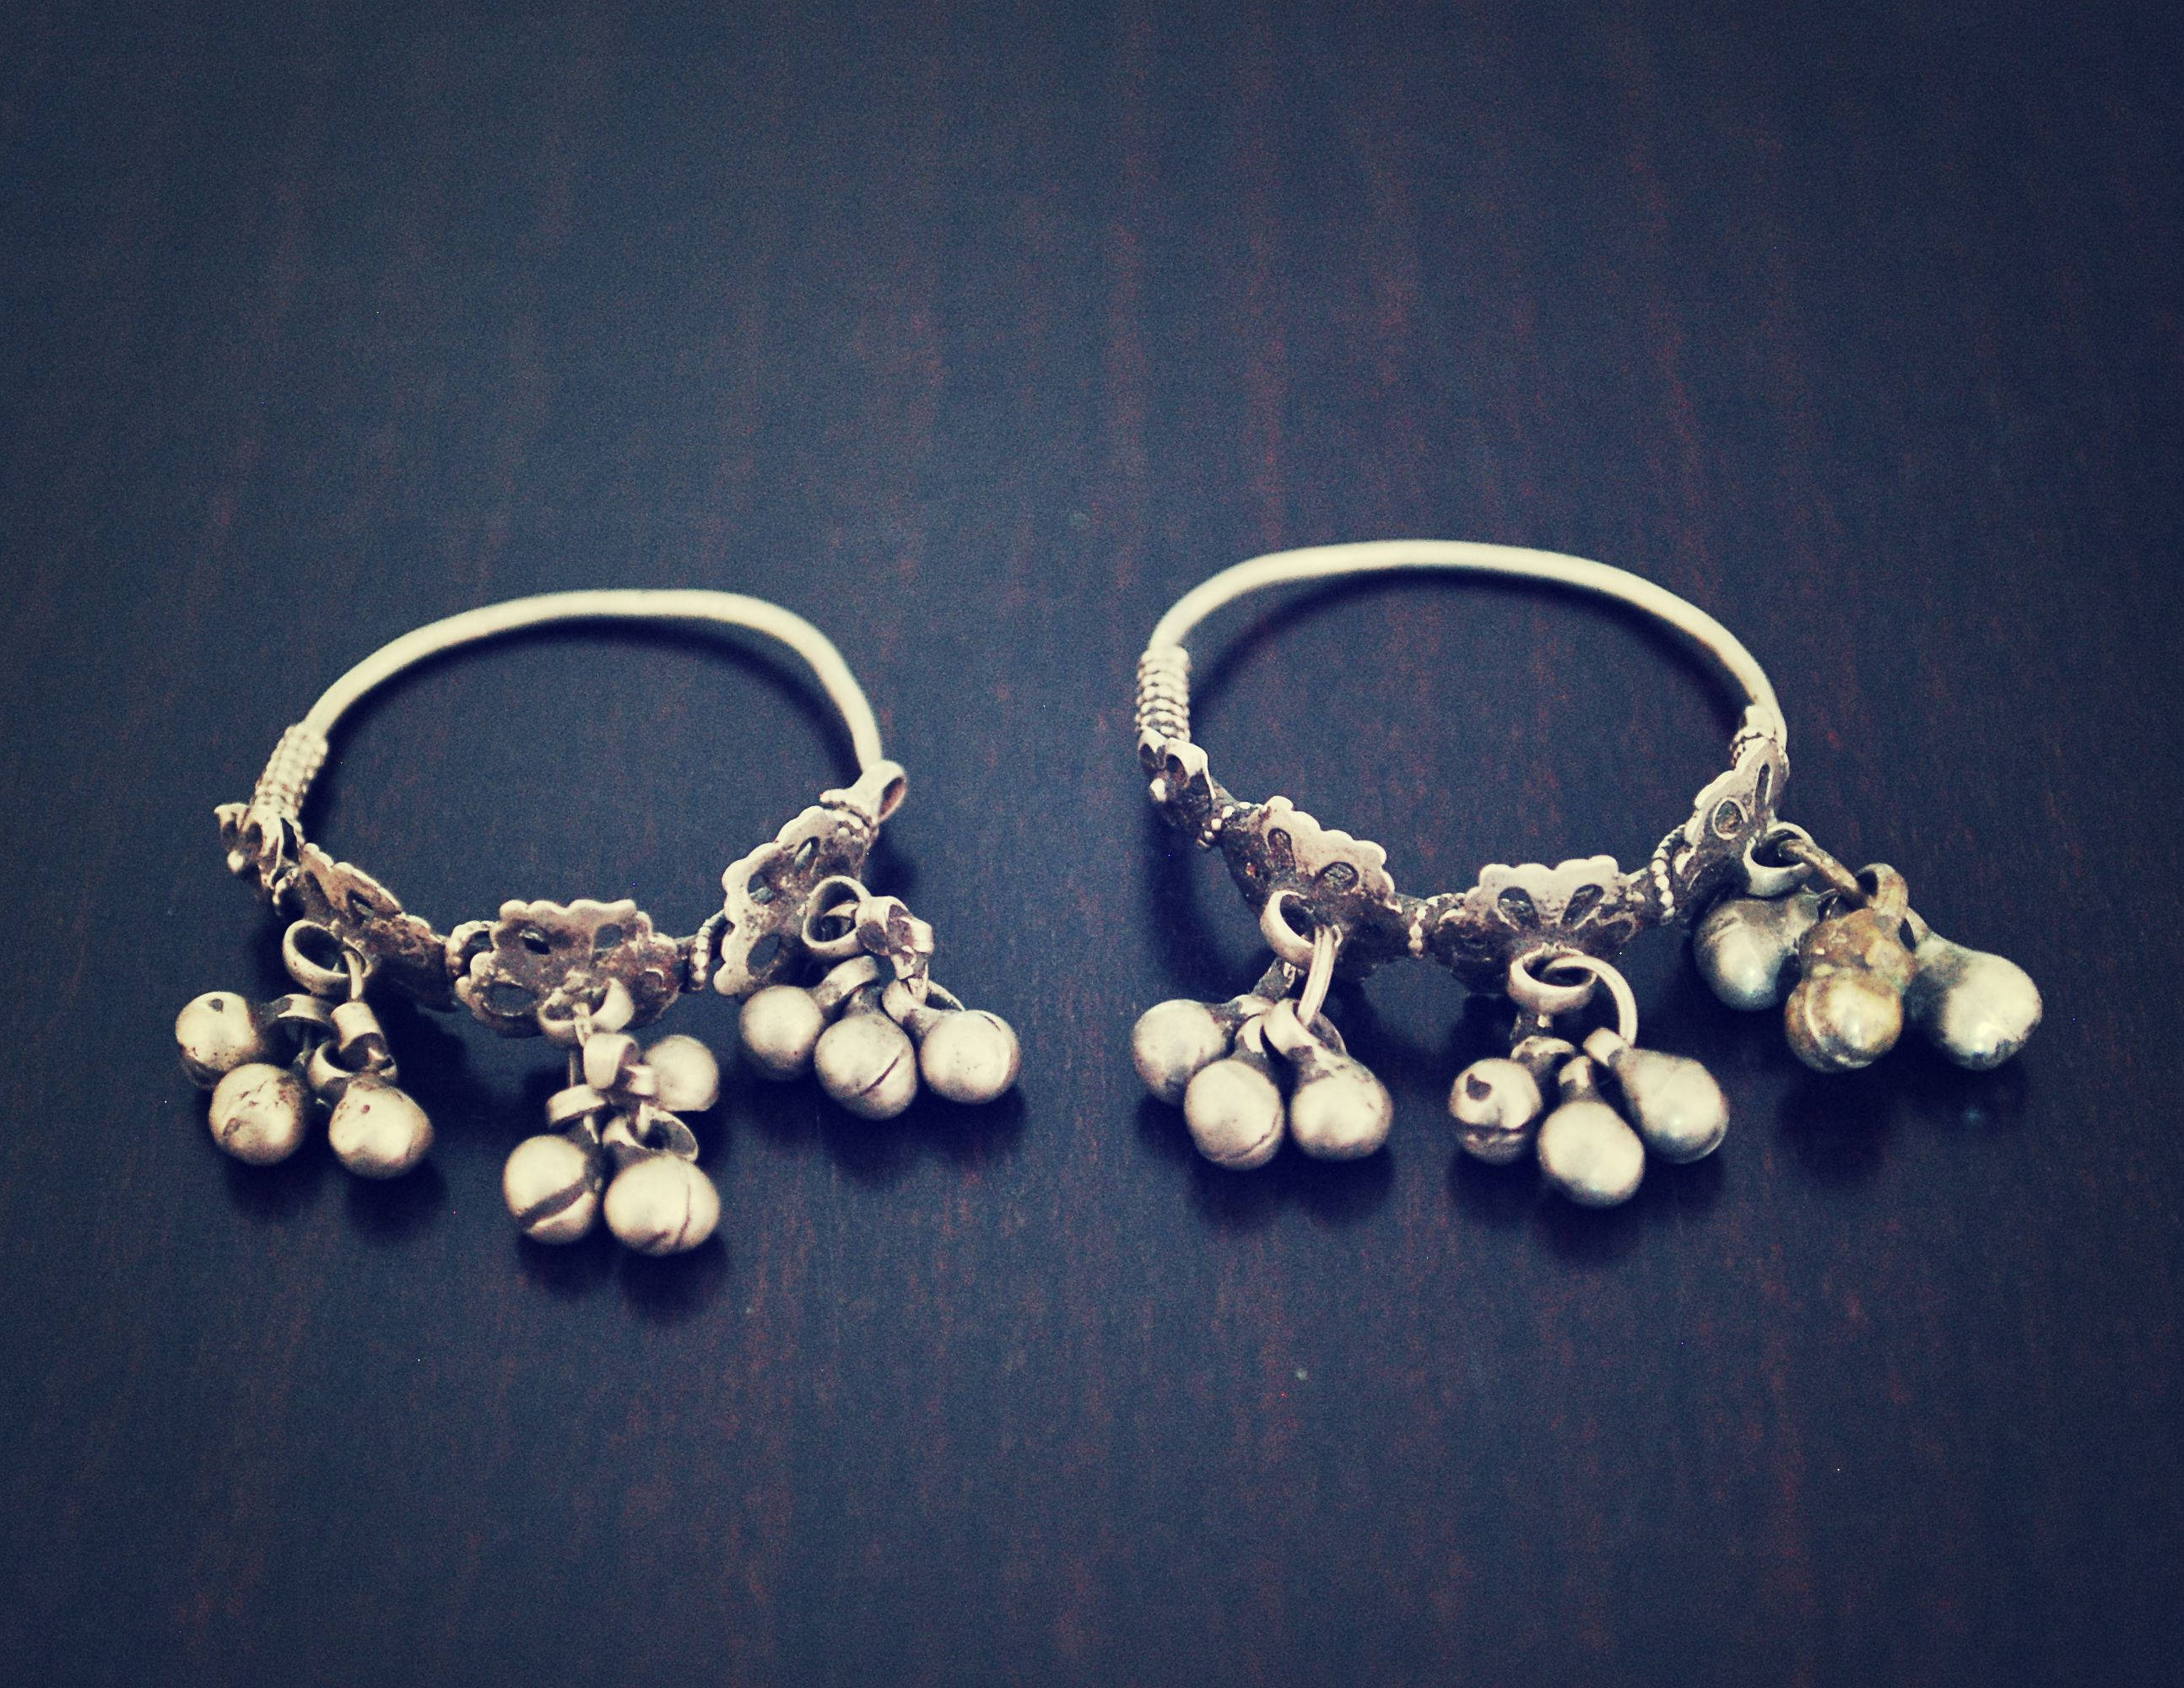 Rajasthani Hoop Earrings with Bells - Rajasthan Hoop Earrings - Rajasthani Jewelry - Tribal Hoop Earrings